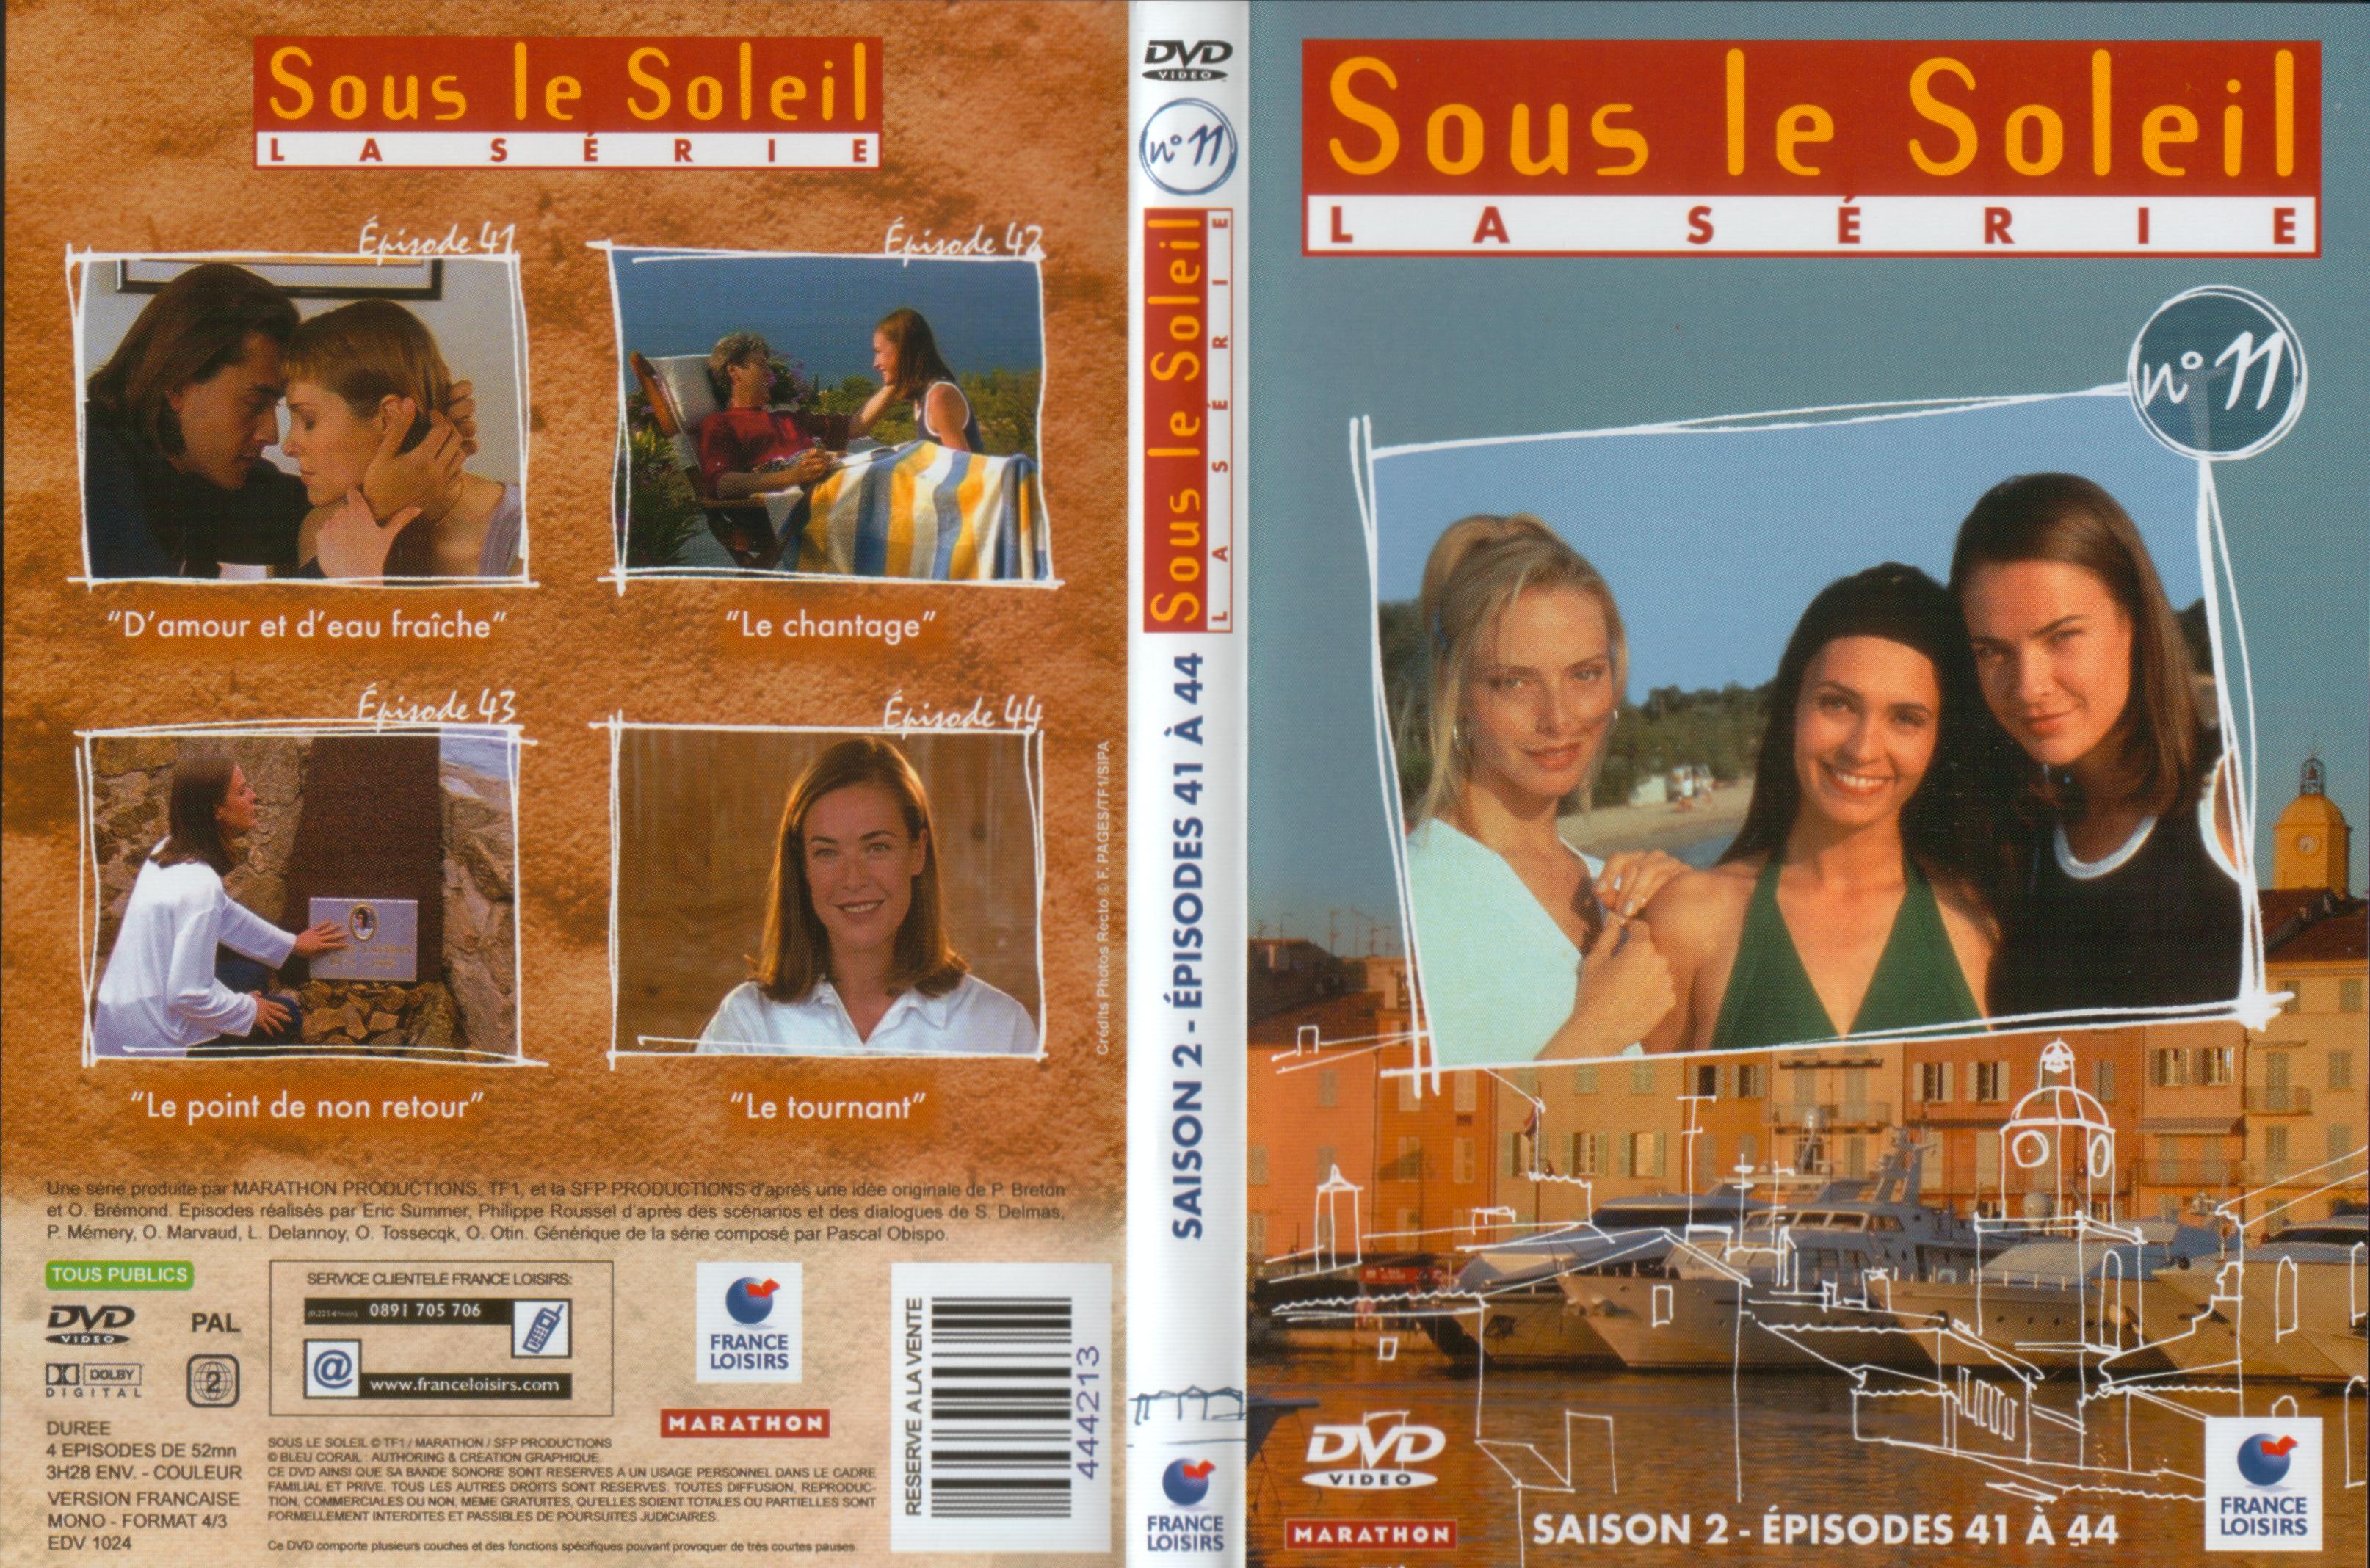 Jaquette DVD Sous le soleil saison 2 vol 11